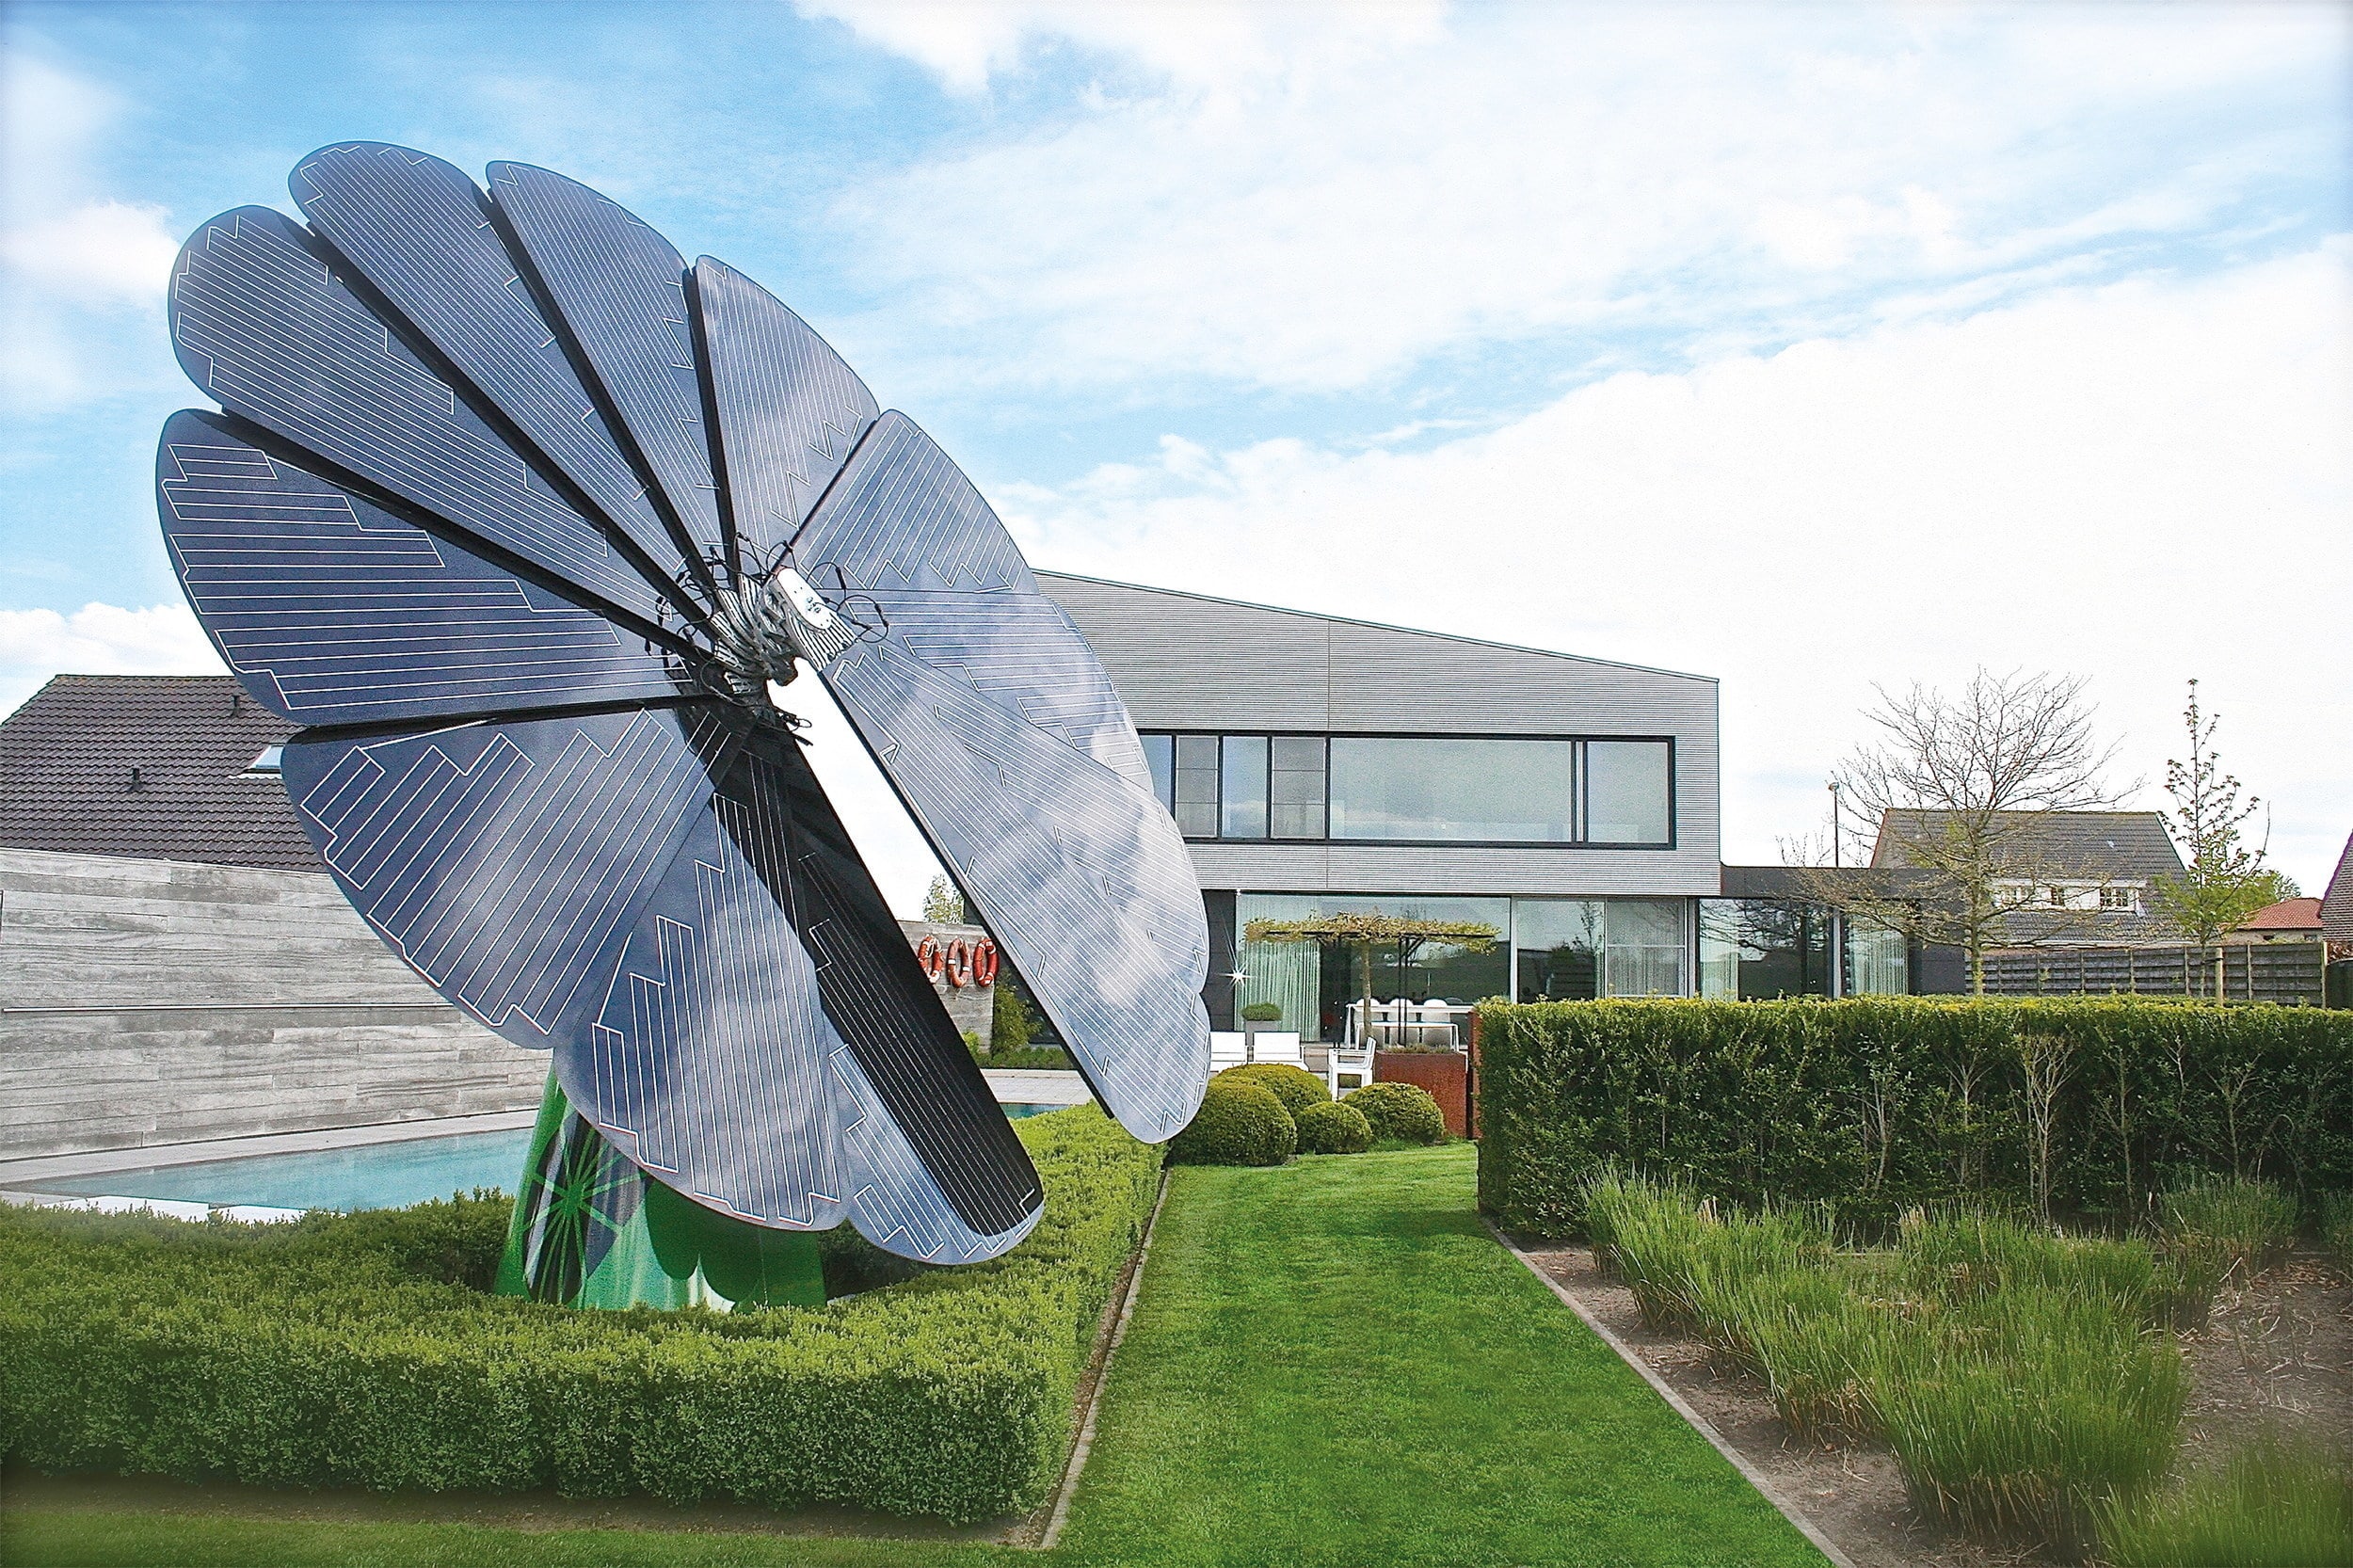 Smartflower supplies solar power